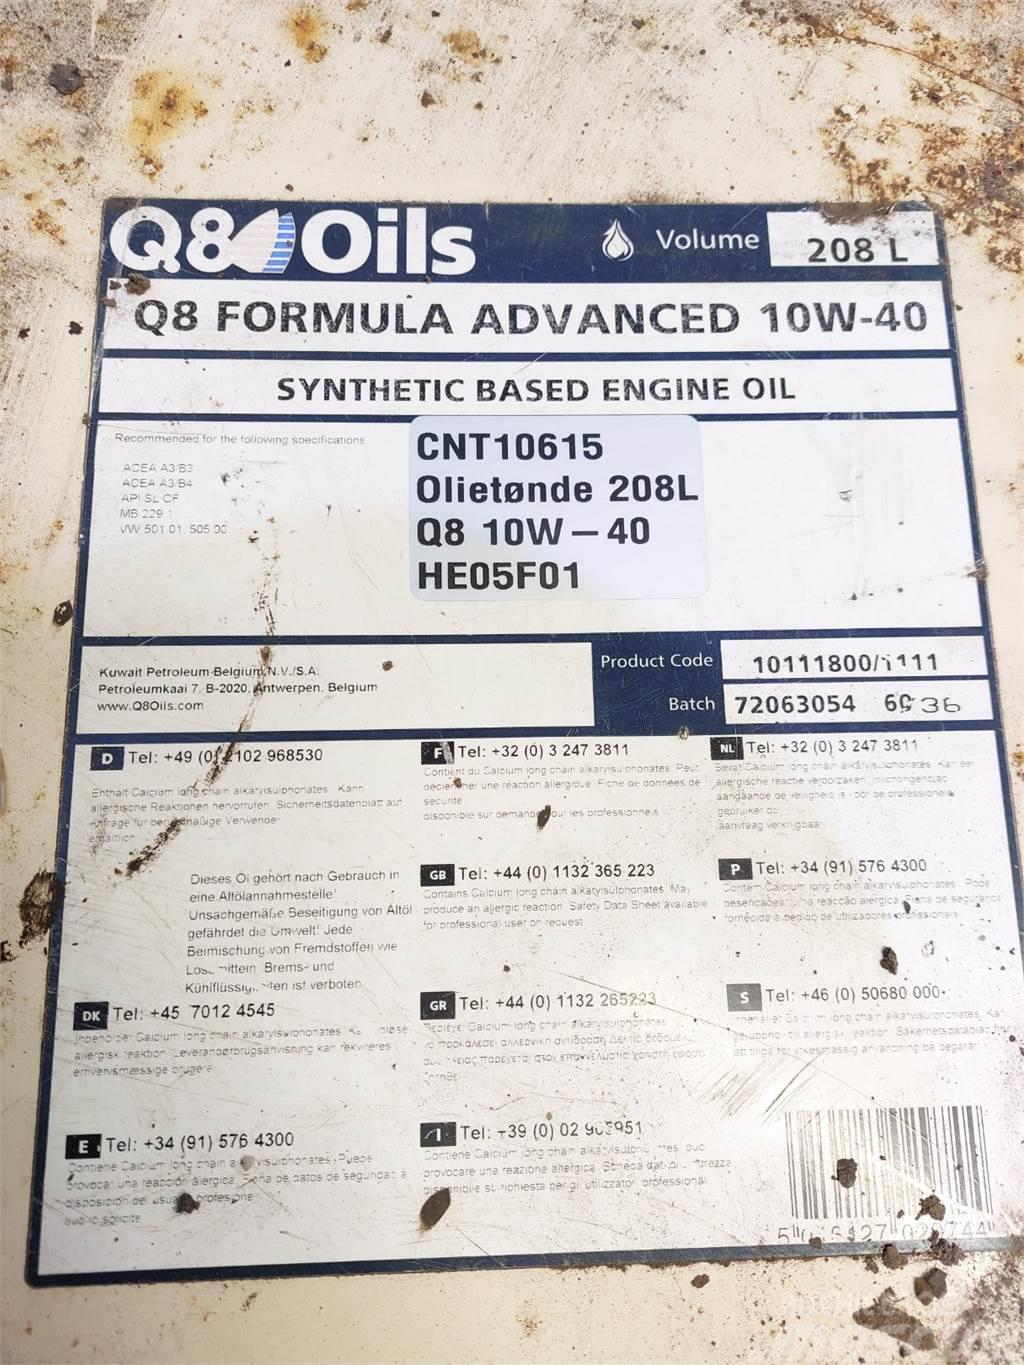  Oiletønde 208L Q8 10W-40 Synthetich Based Pozostały sprzęt budowlany